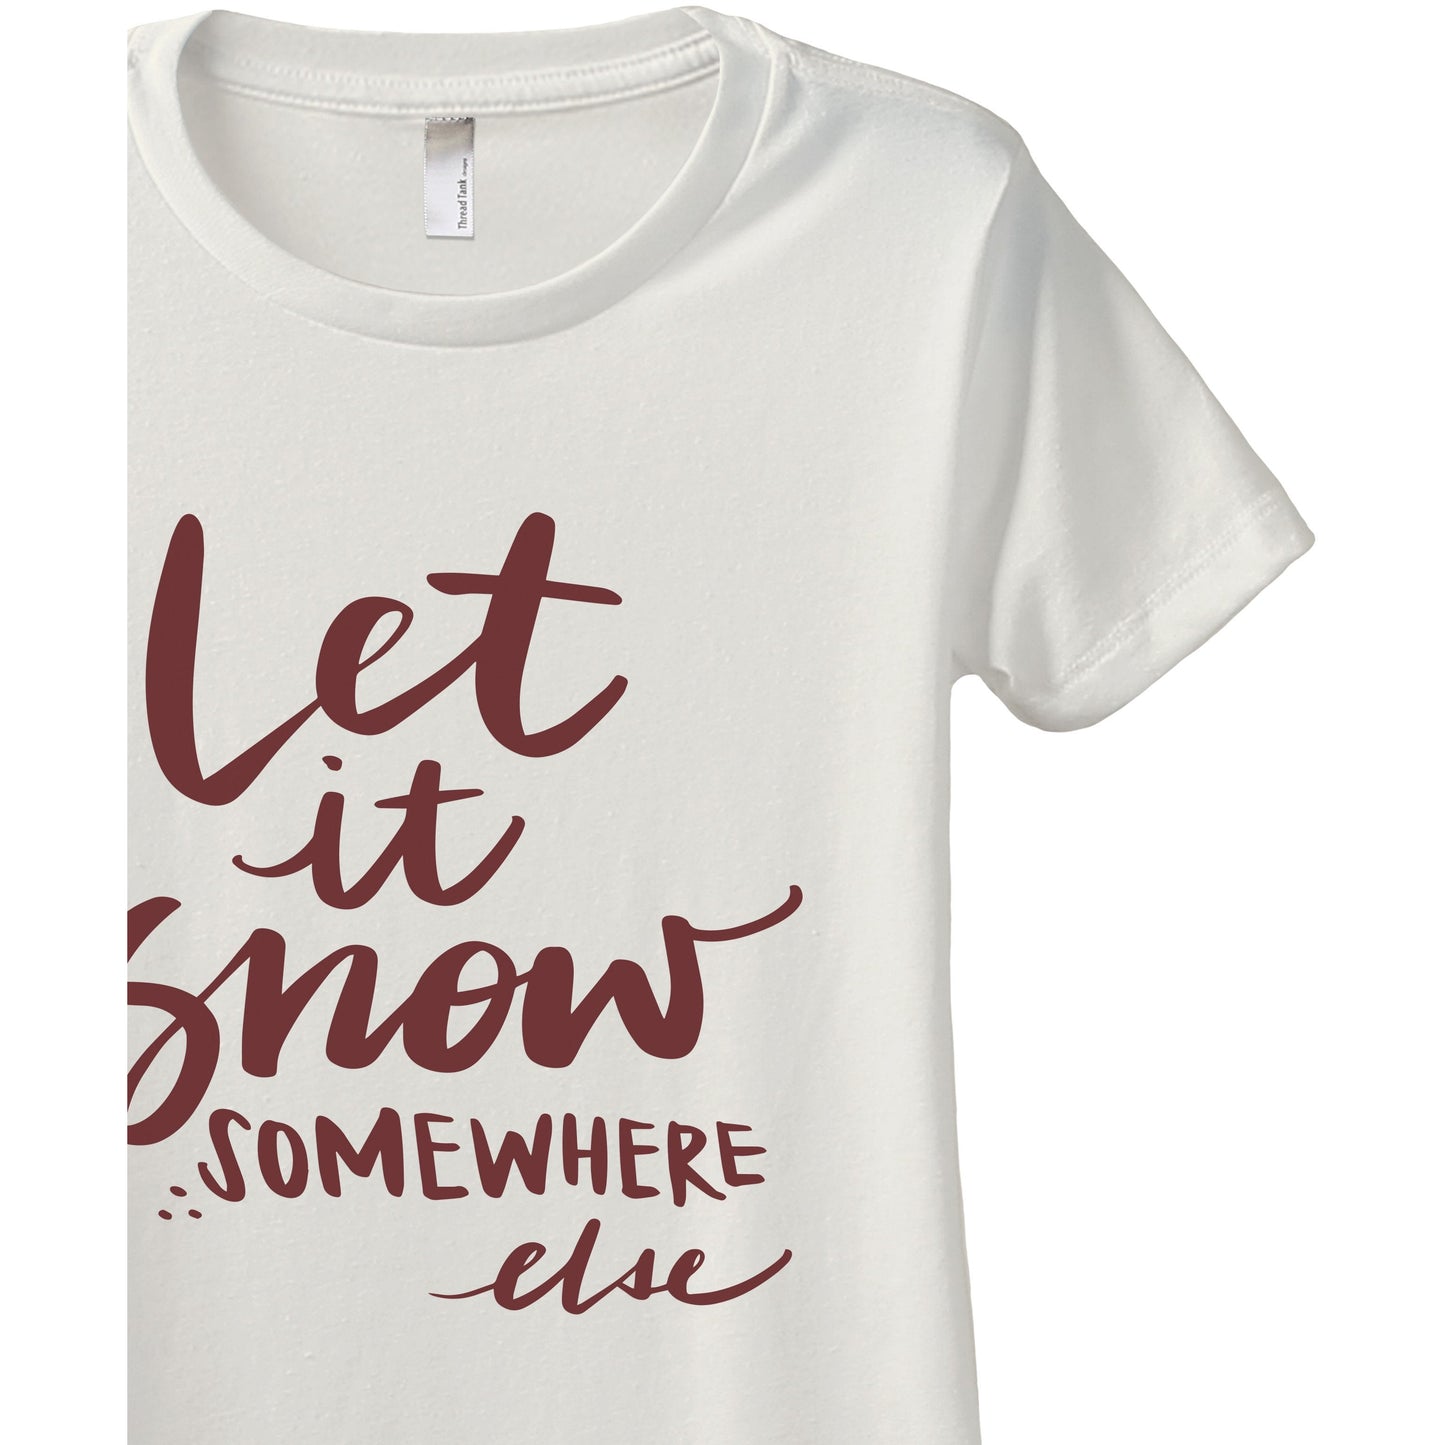 Let It Snow Somewhere Else